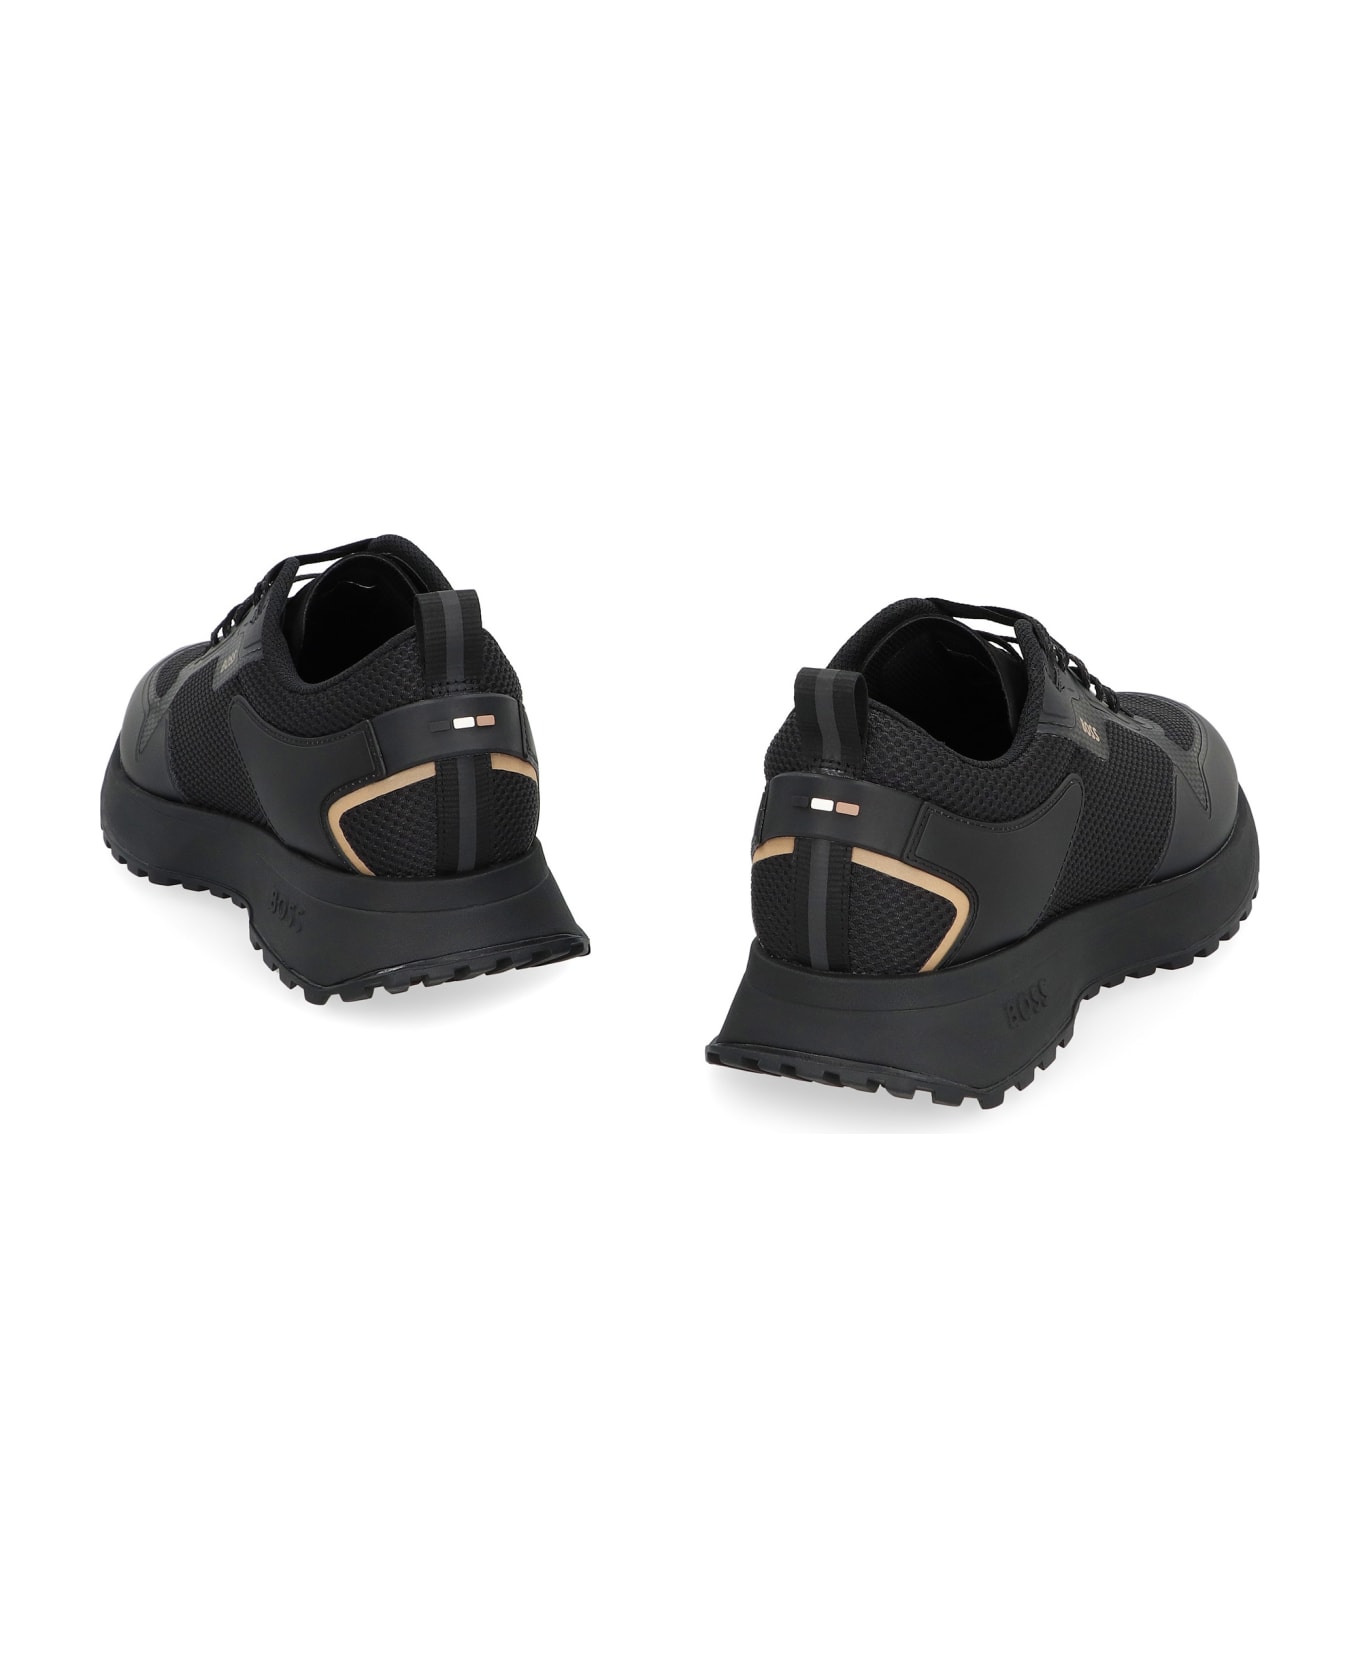 Hugo Boss Jonah Fabric Low-top Sneakers - black